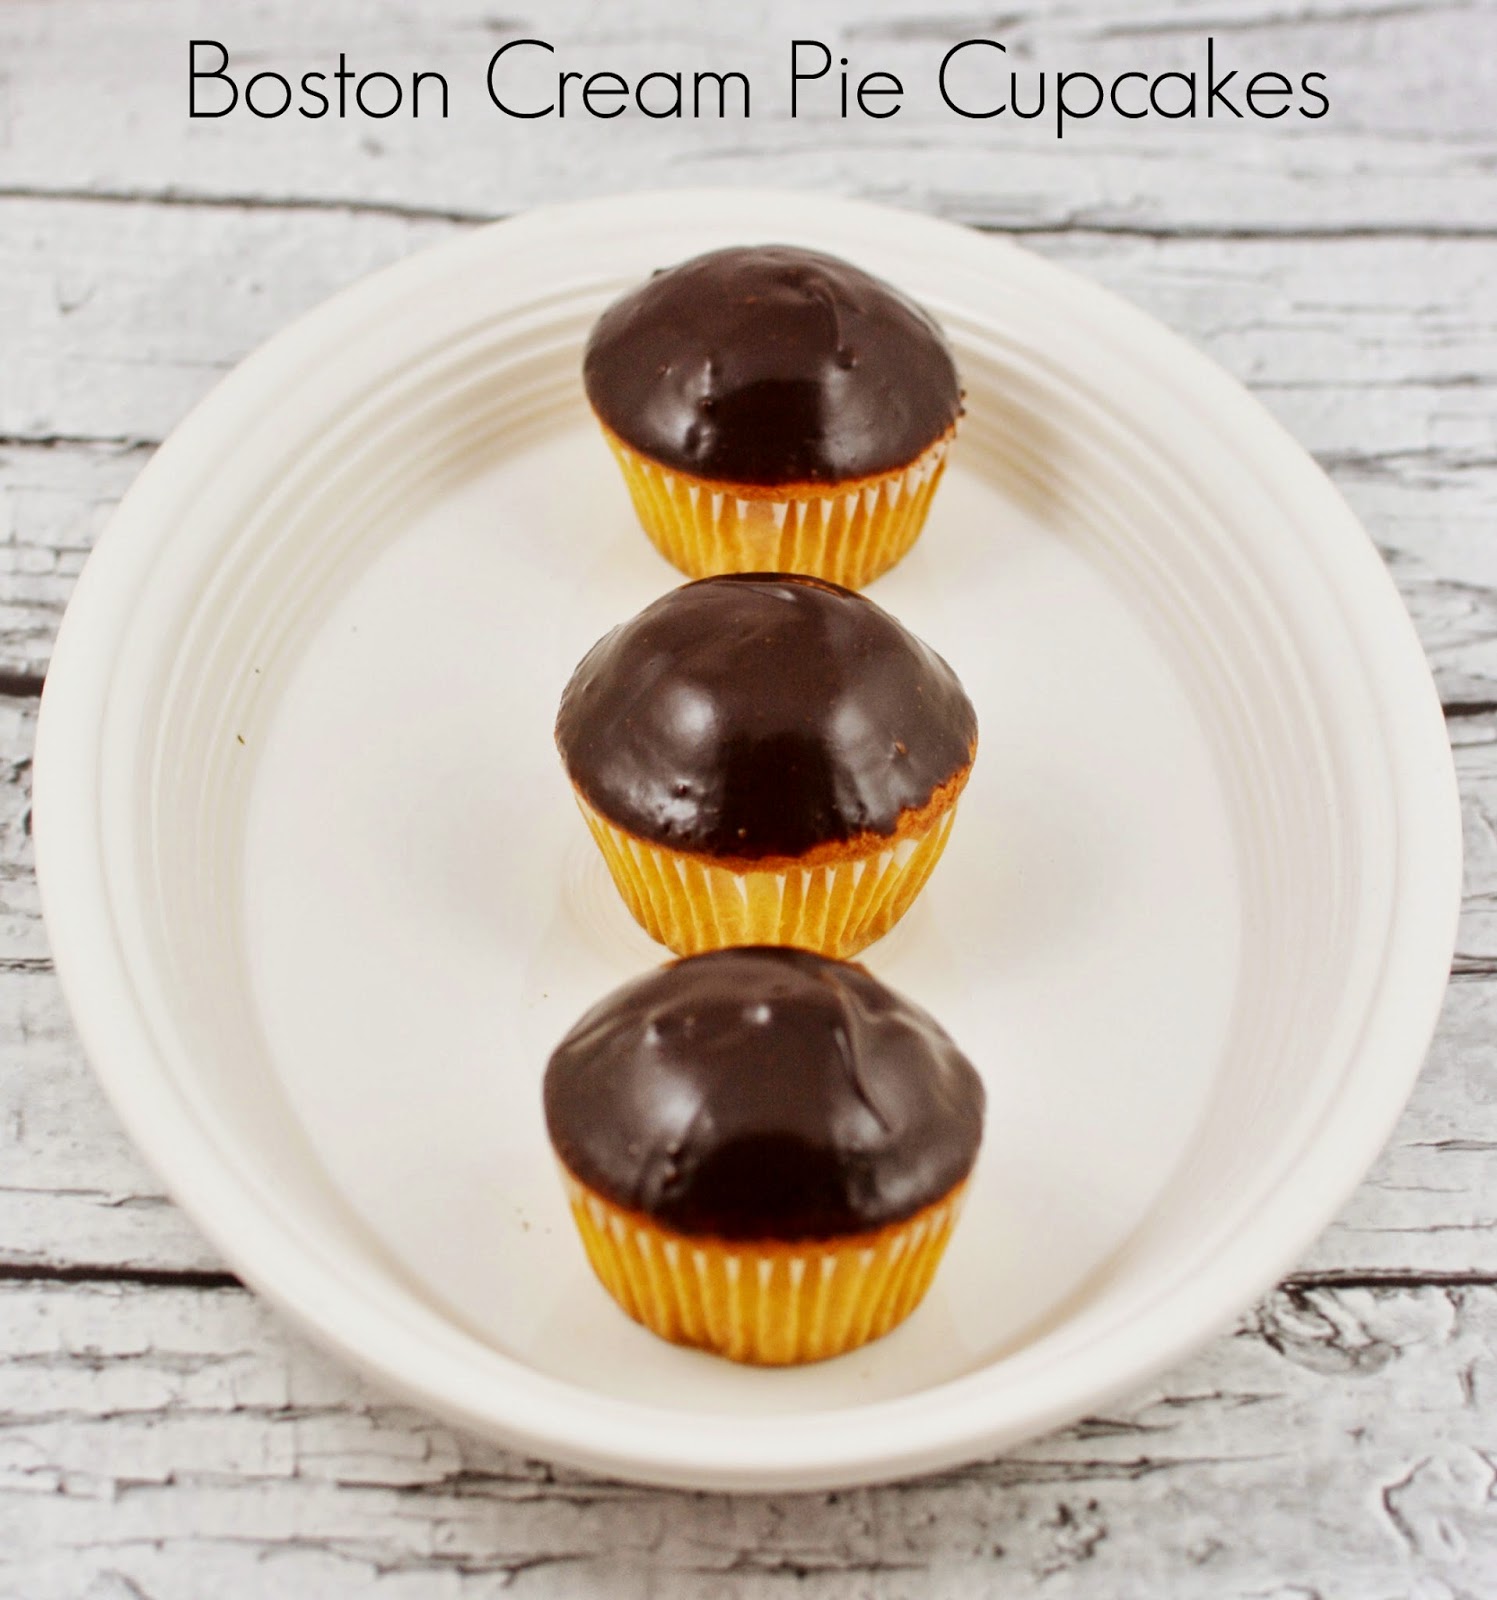 Boston Cream Pie Cupcakes #recipe #dessert